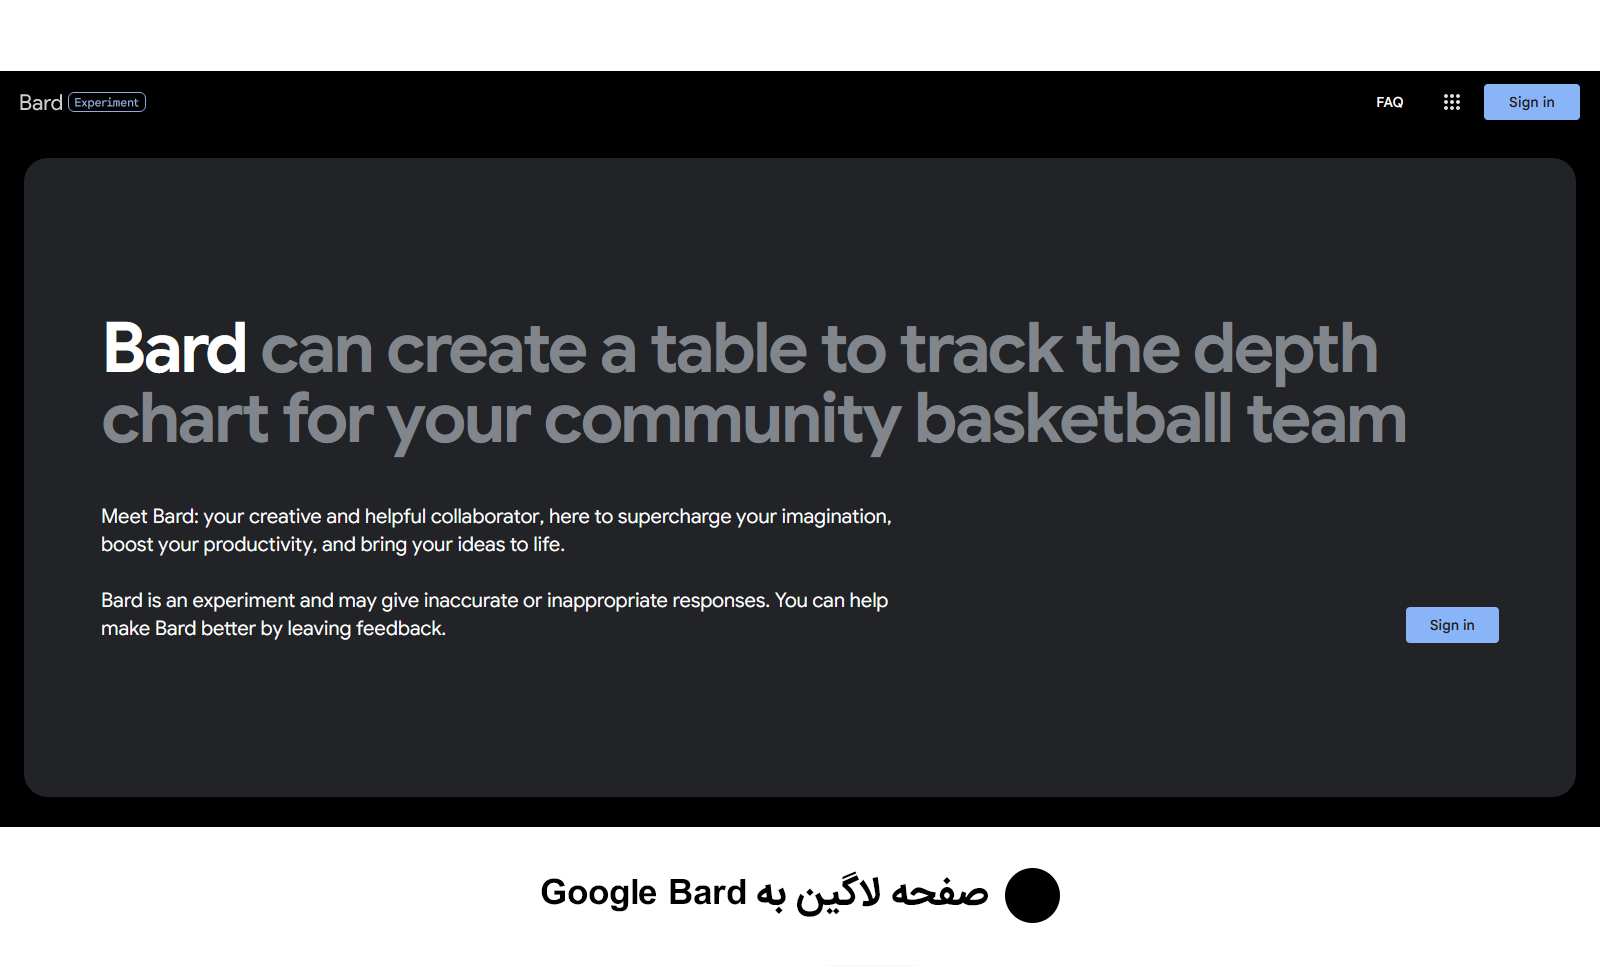 صفحه لاگین به Google Bard